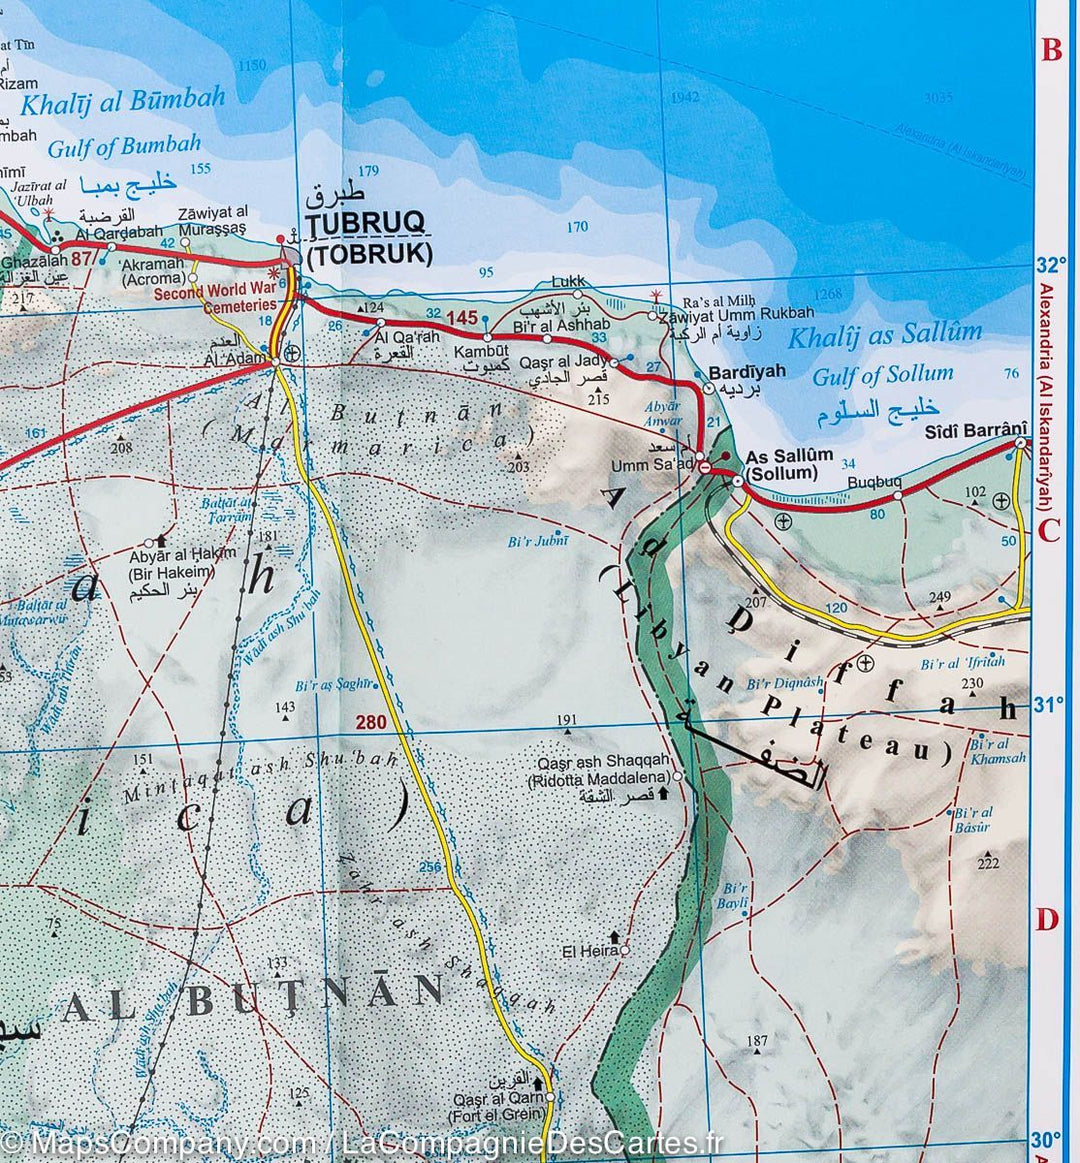 Carte routière &#8211; Libye | Gizi Map - La Compagnie des Cartes